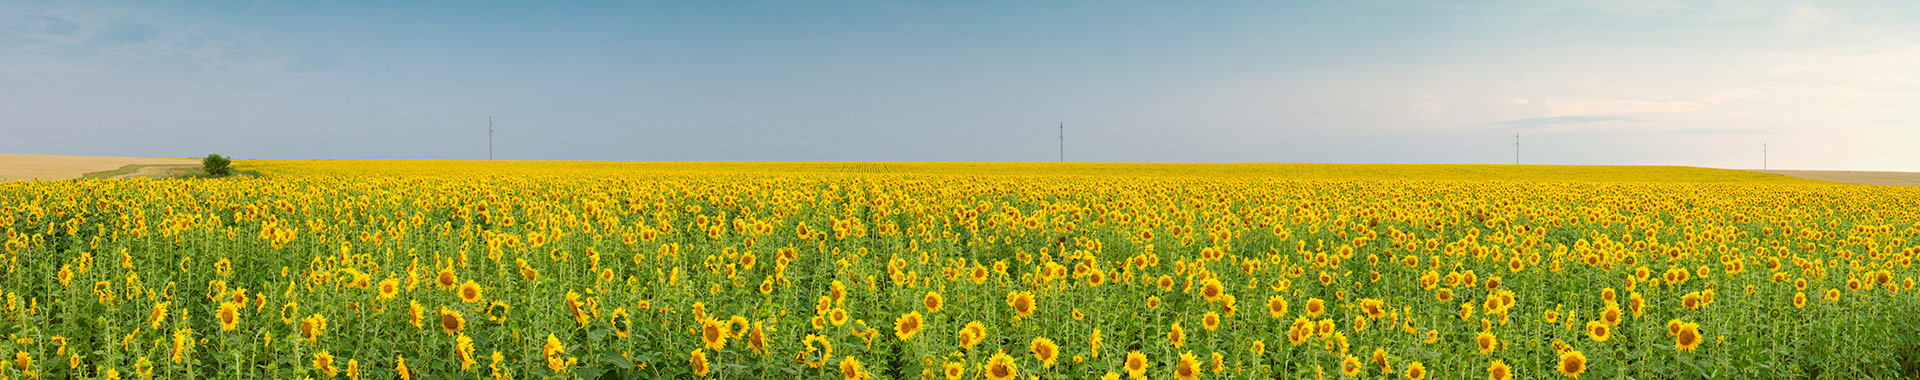 Blick auf Landschaft mit Sonnenblumen